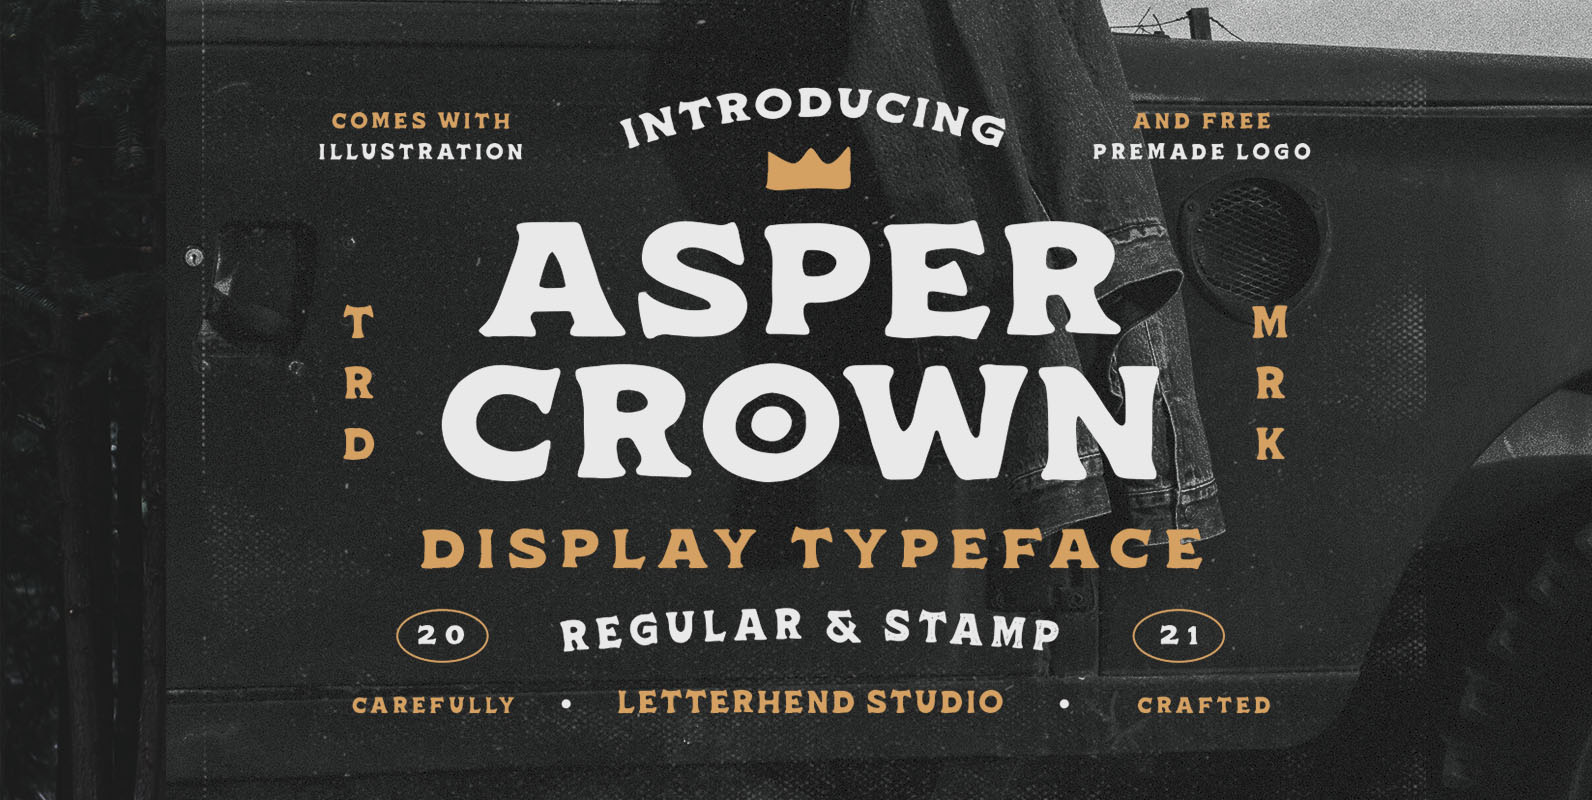 Asper Crown